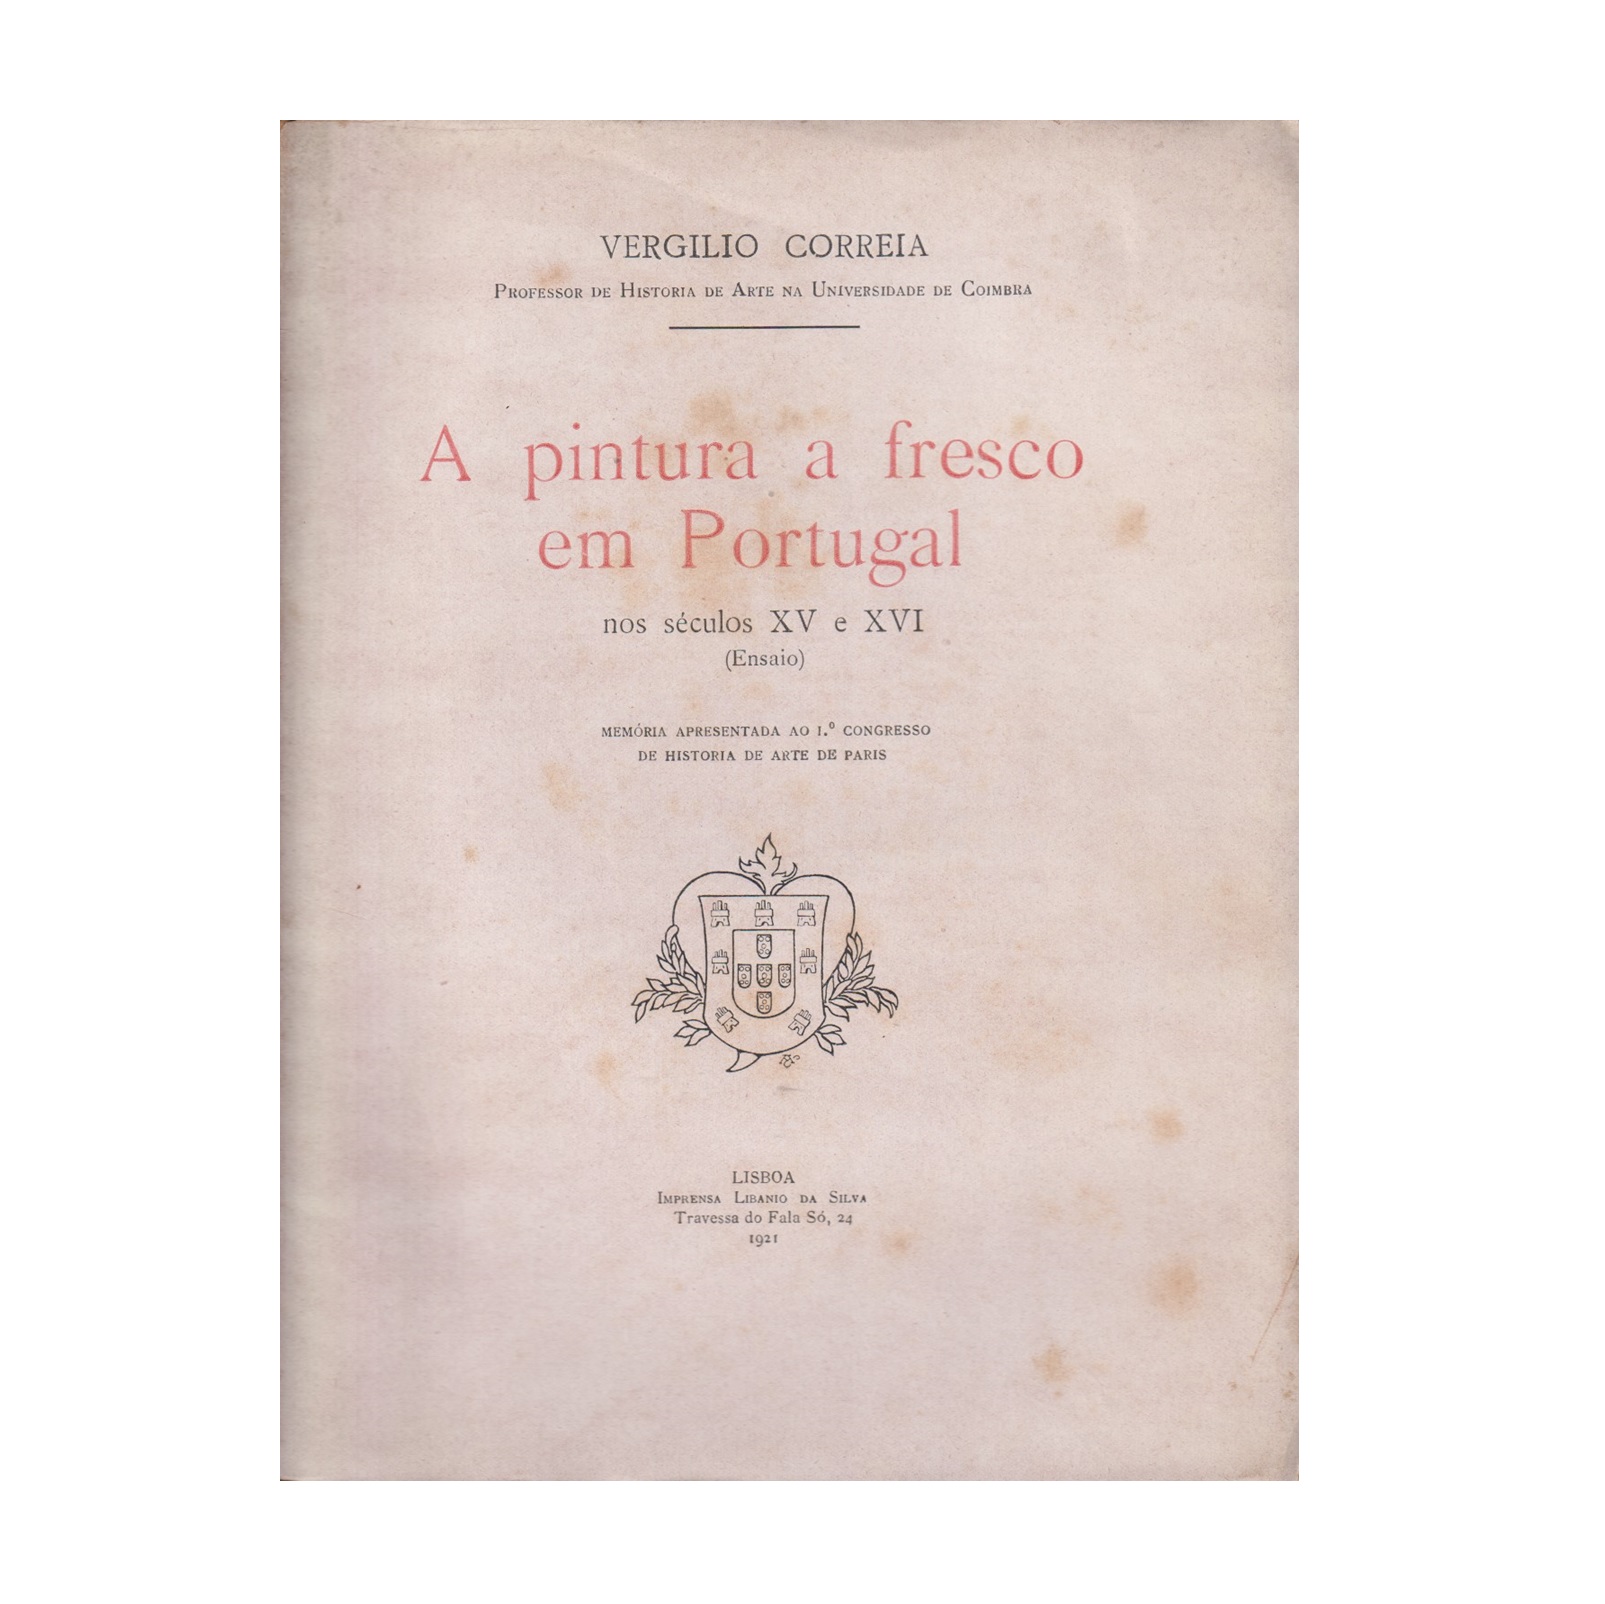  A PINTURA A FRESCO EM PORTUGAL NOS SÉCULOS XV E XVI